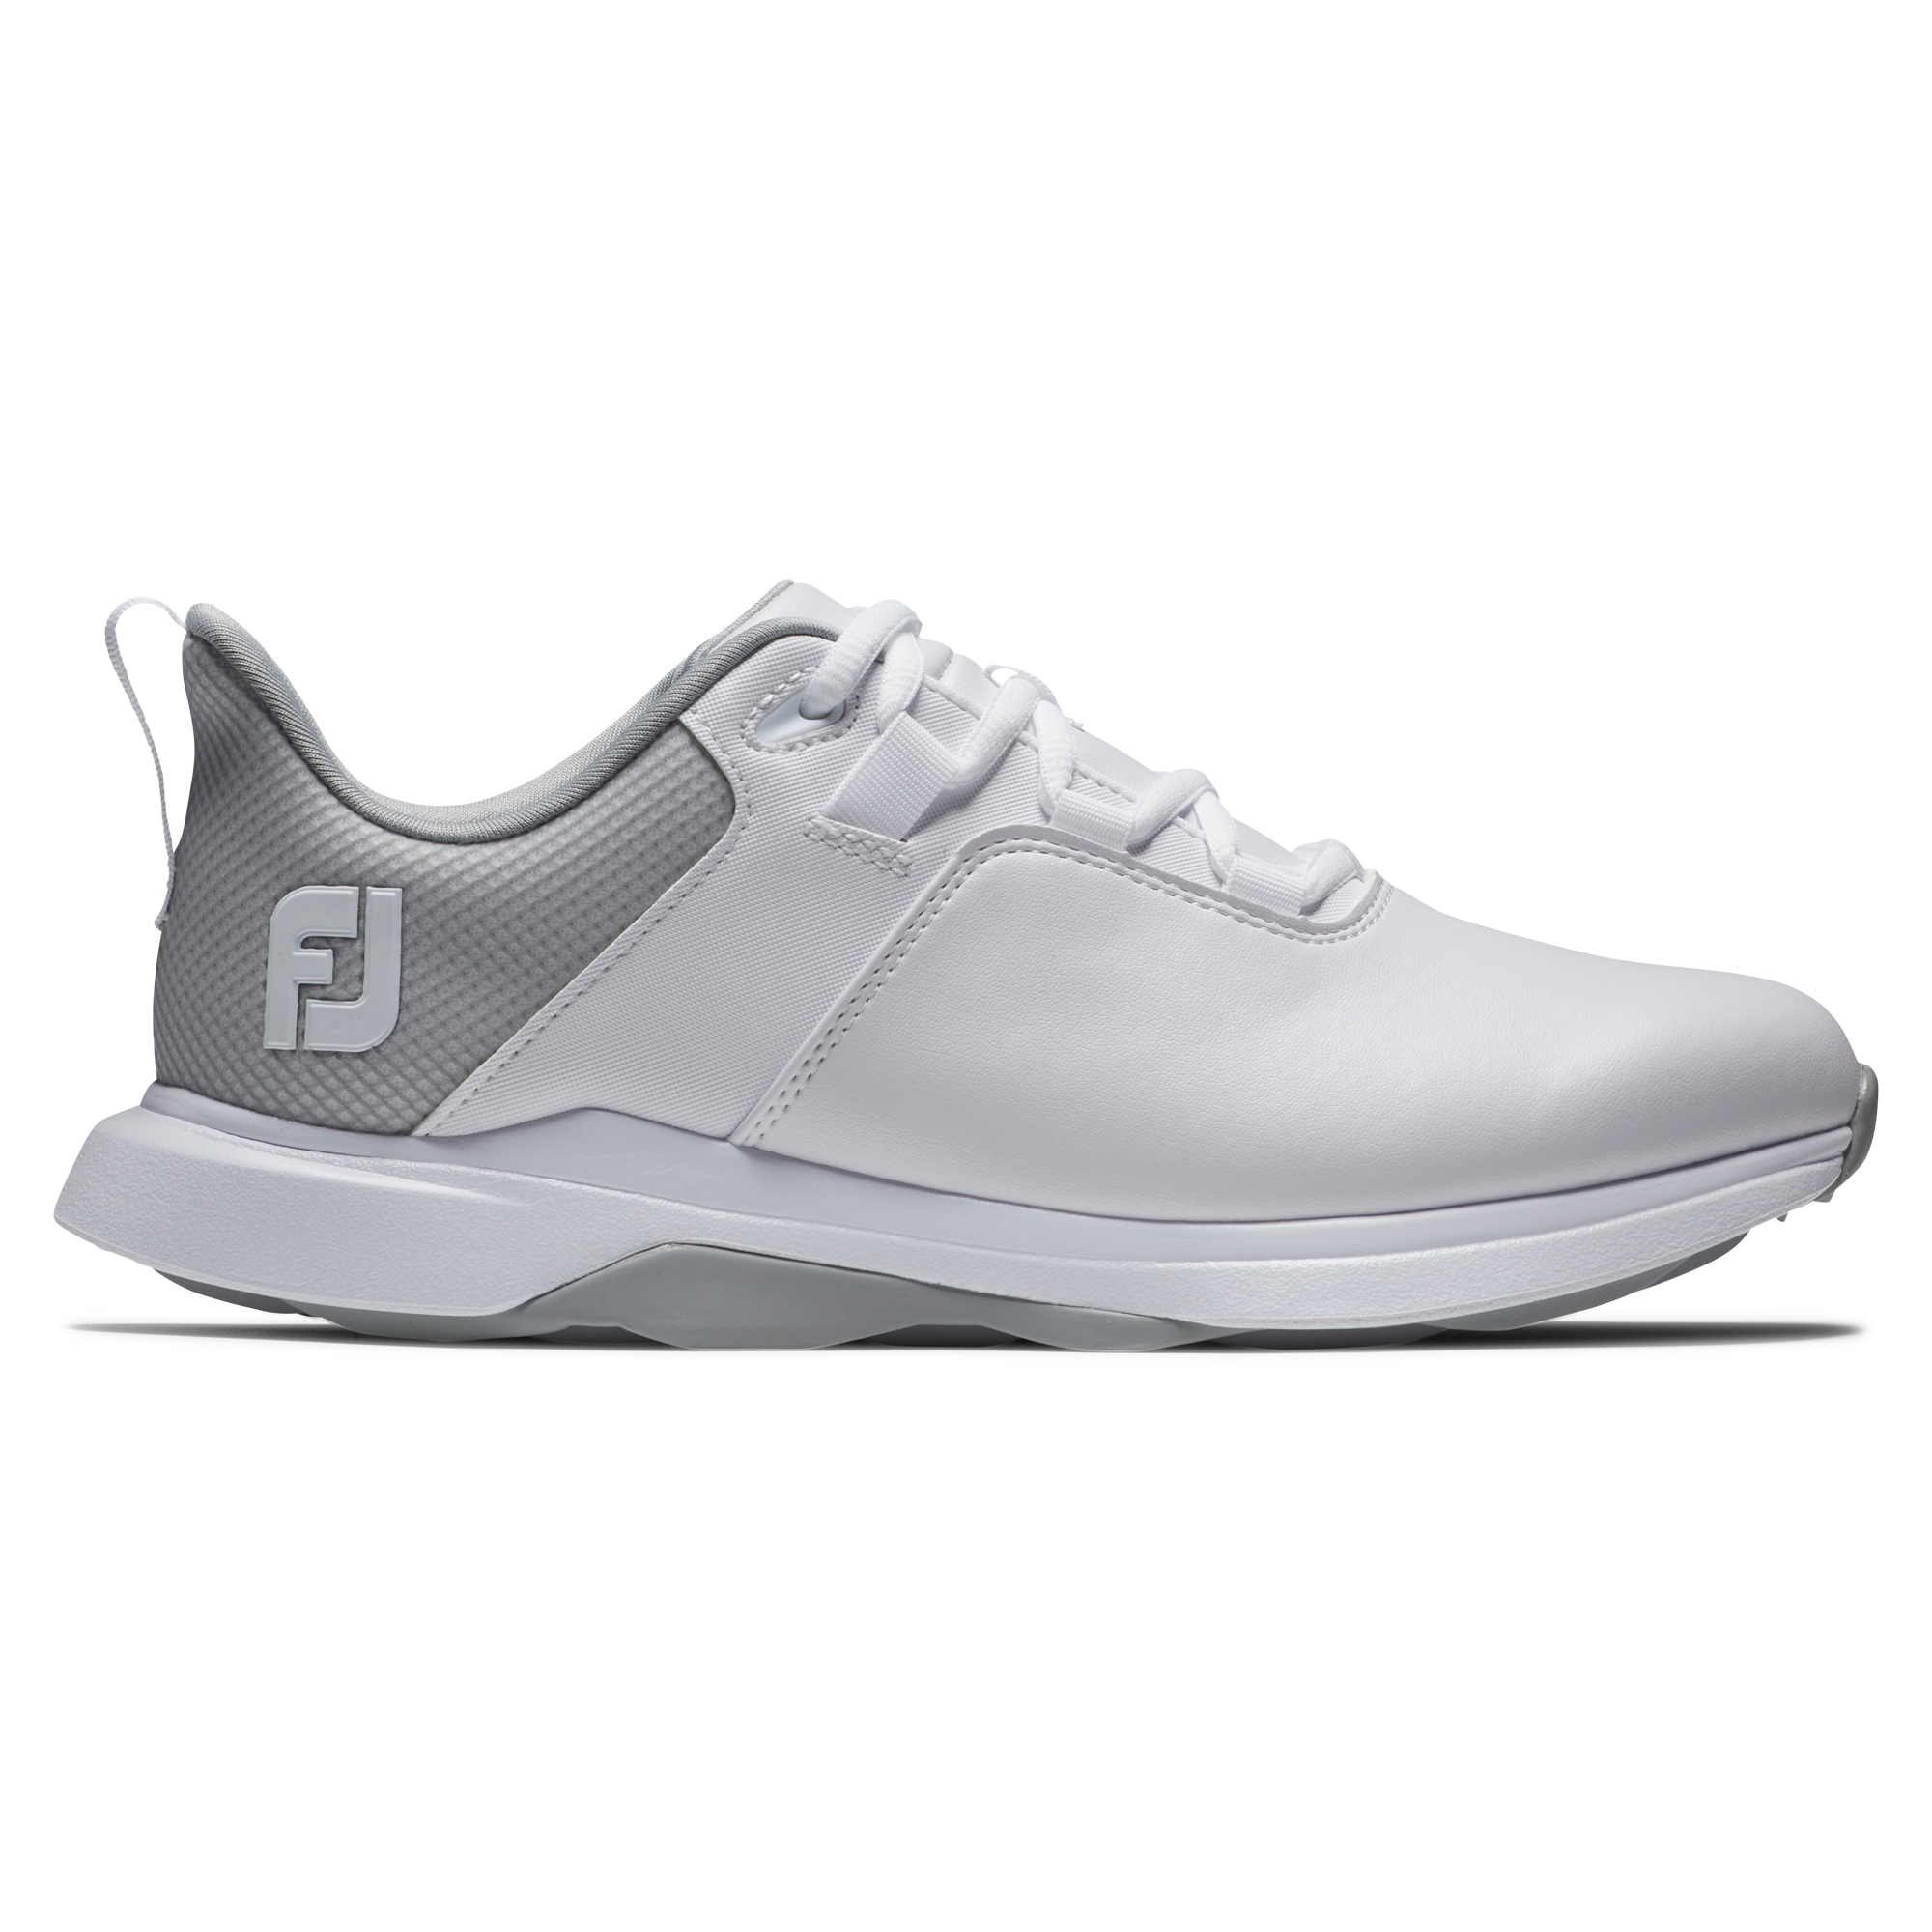 FootJoy ProLite dámské golfové boty, bílé, vel. 4 UK